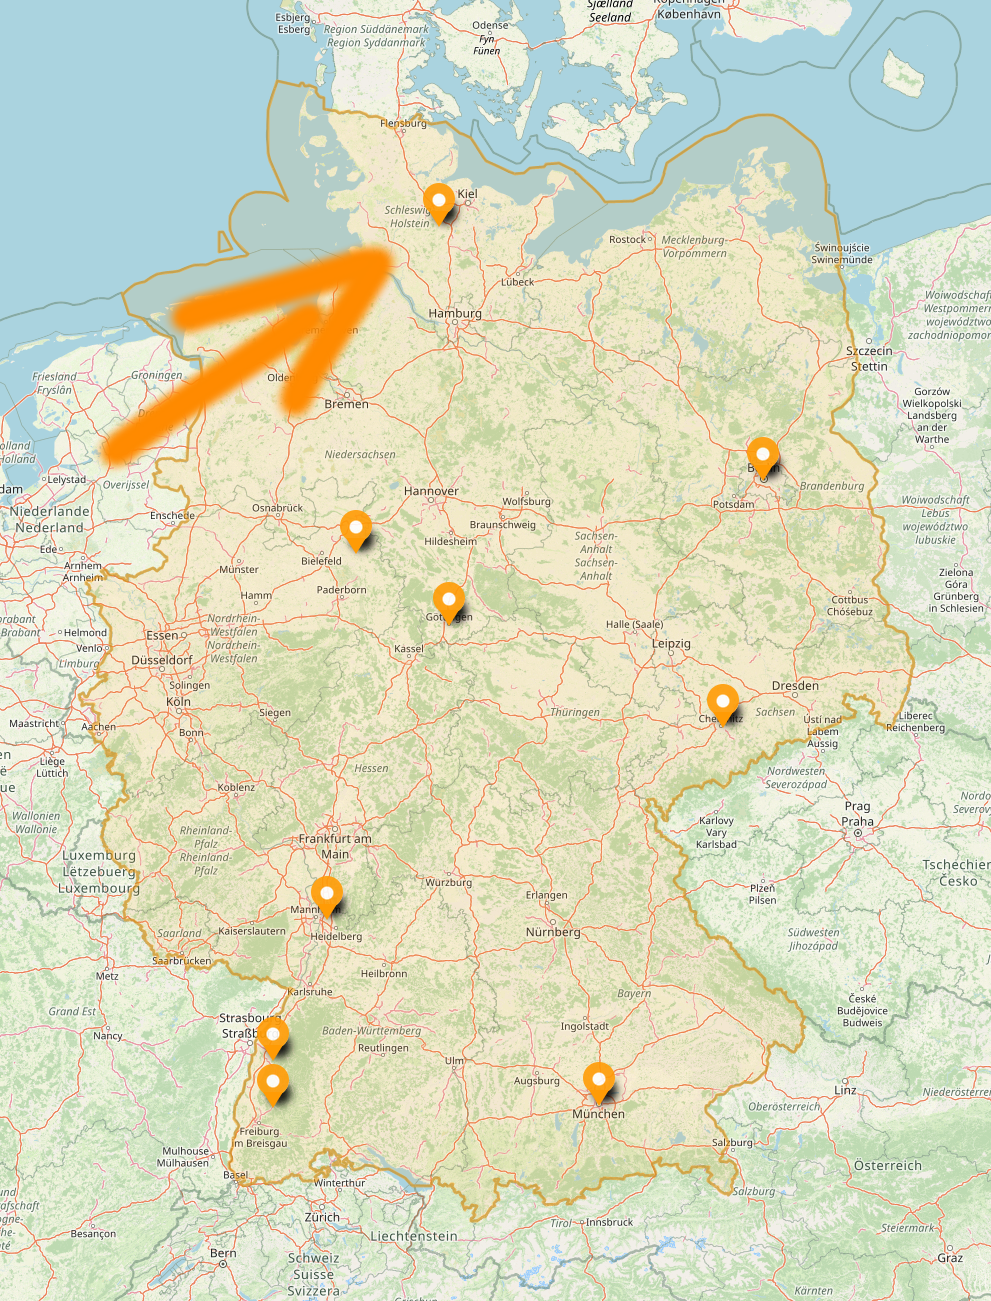 Eine Karte Deutschlands, in der all unsere Standorte markiert sind: Breisgau, Alte Hansestadt Lemgo, Berlin, Chemnitz, Göttingen, Rhein-Neckar, München, Ortenau und ganz neu Nord im Herzen Schleswig-Holsteins, worauf auch ein dicker Pfeil zeigt.